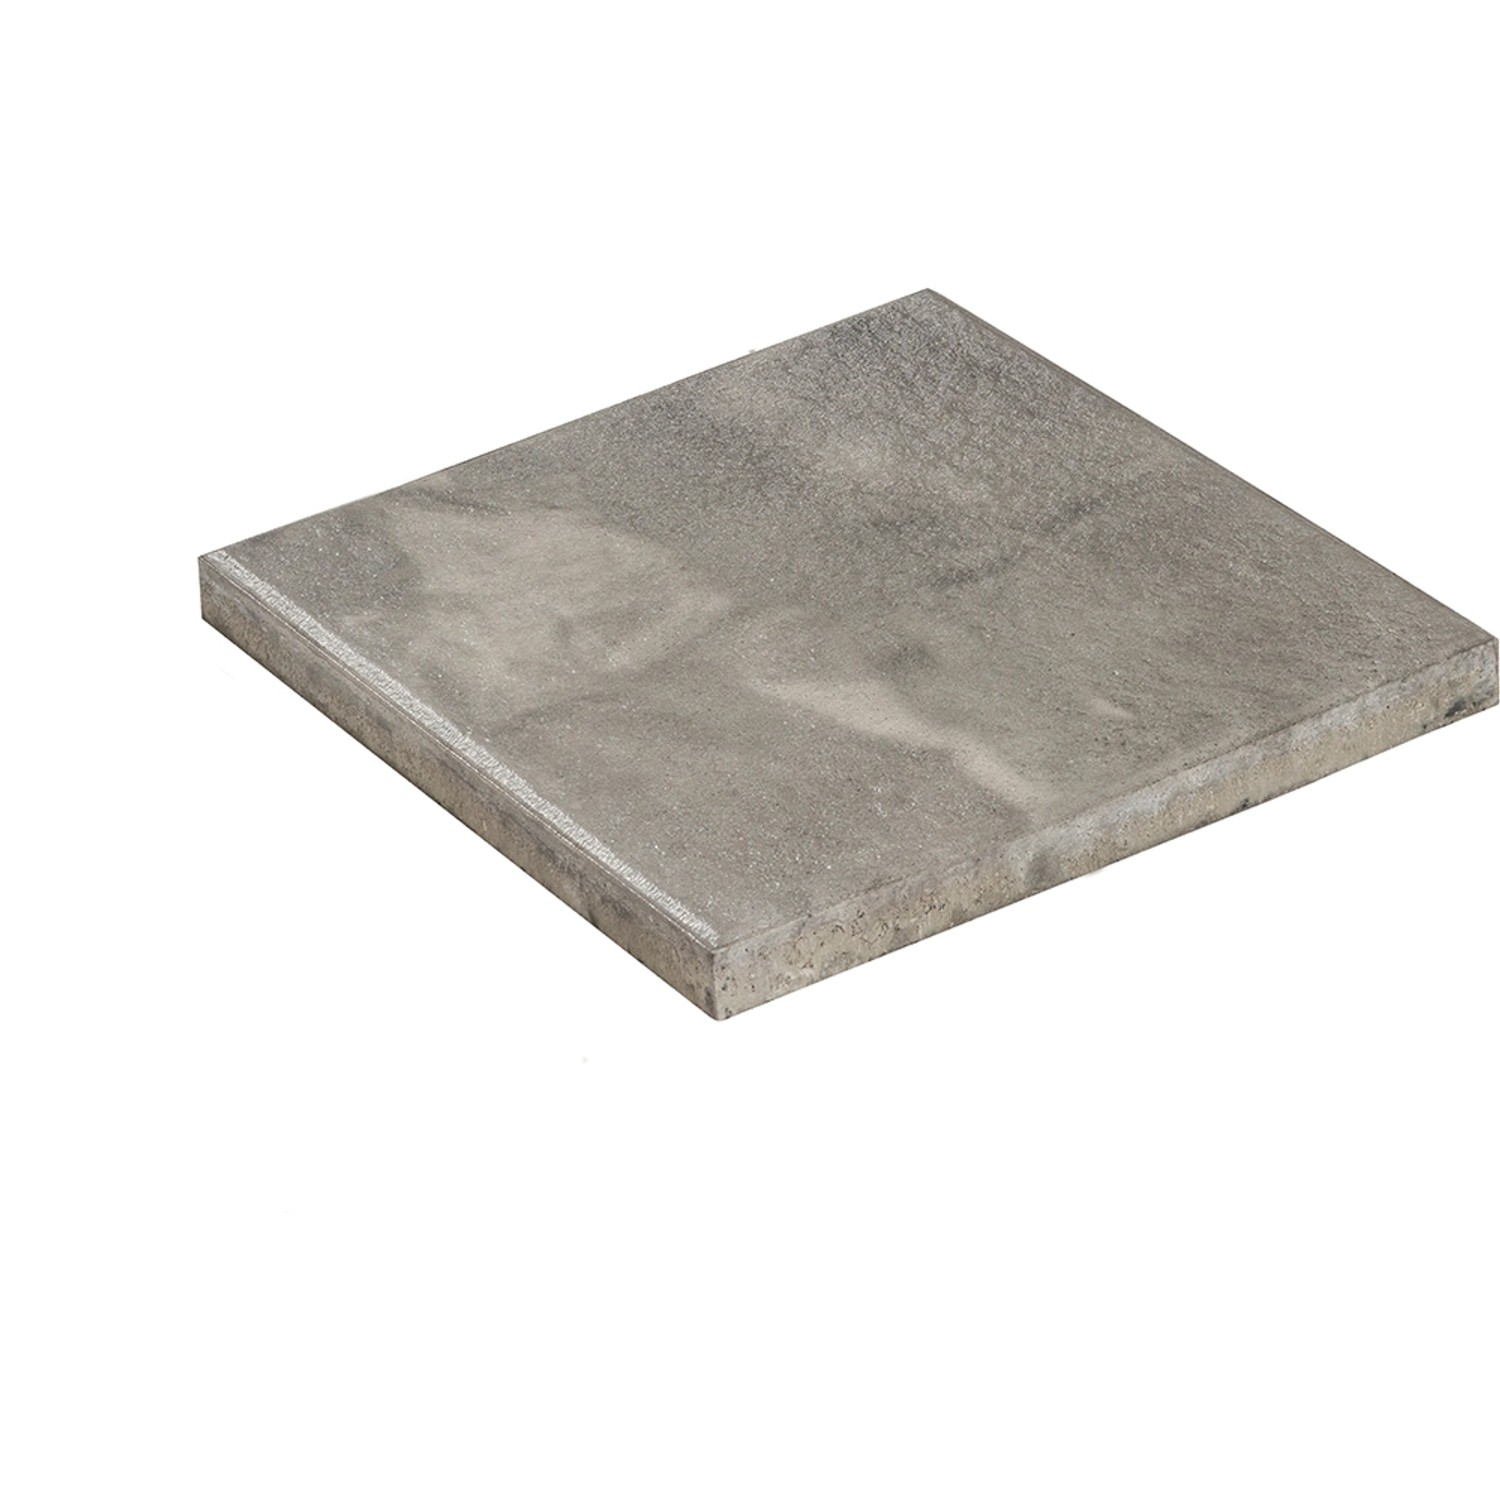 Diephaus Terrassenplatte Noca Weiß-Schwarz 40 x 40 x 4 cm PE4